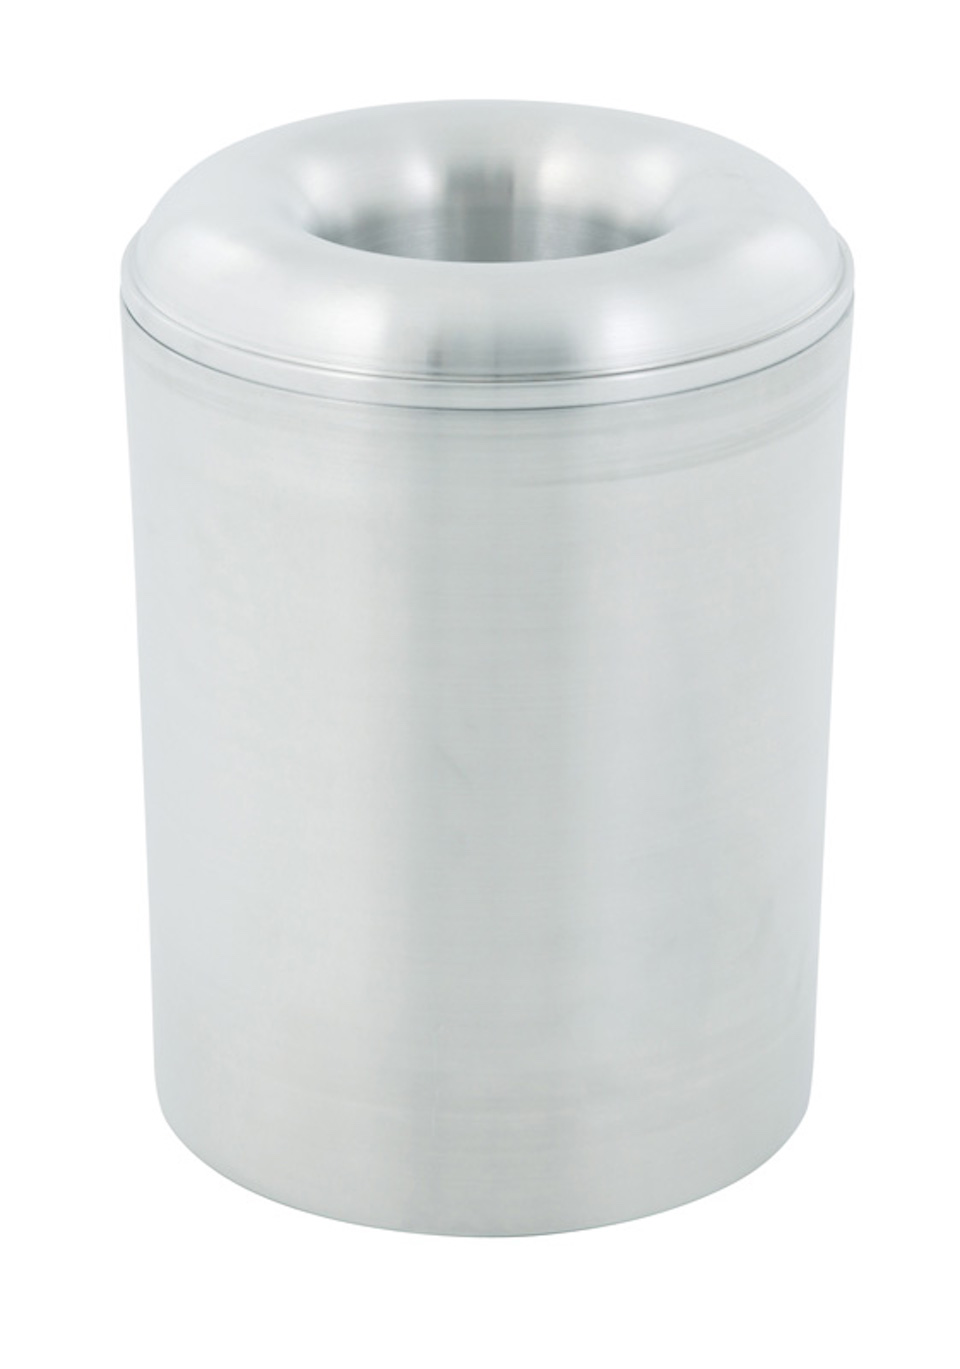 Selbstlöschender Papierkorb & Abfallsammler aus Aluminium | 20 Liter, HxØ 34,2x30cm | Silber